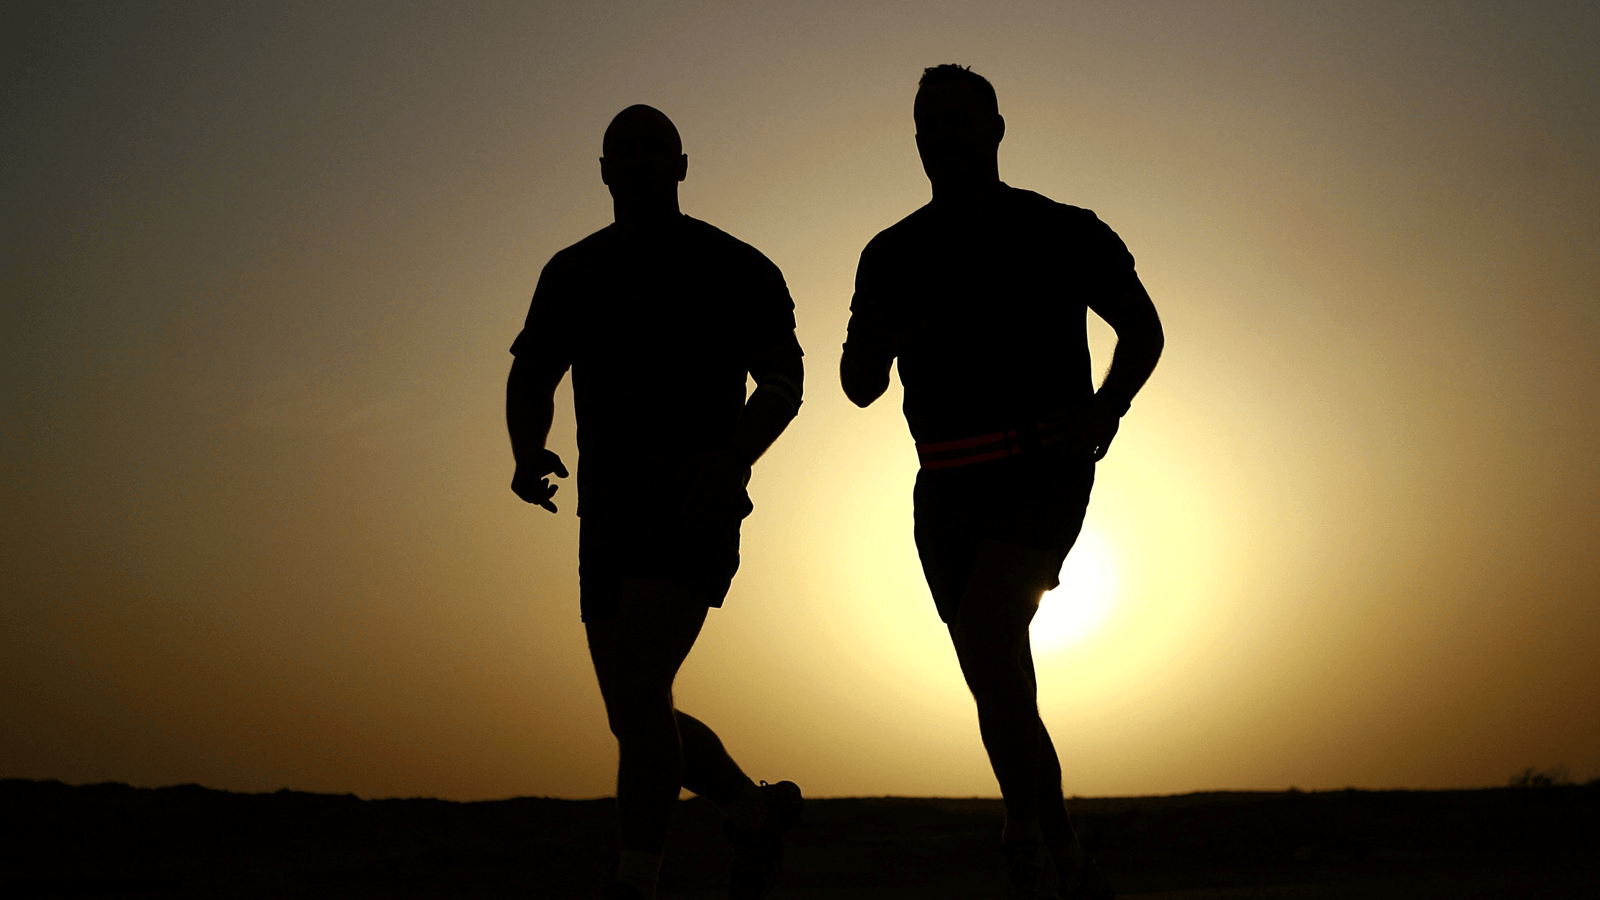 Tác dụng của đi bộ buổi tối với sức khỏe cũng tích cực tương tự như bạn đi bộ đều đặn vào buổi sáng hay luyện tập bất kì môn thể thao nào. Đó là chưa kể những lợi ích cộng thêm như tốt cho tiêu hóa và tăng cường sự kết nối với bạn đời khi đi bộ cùng nhau.